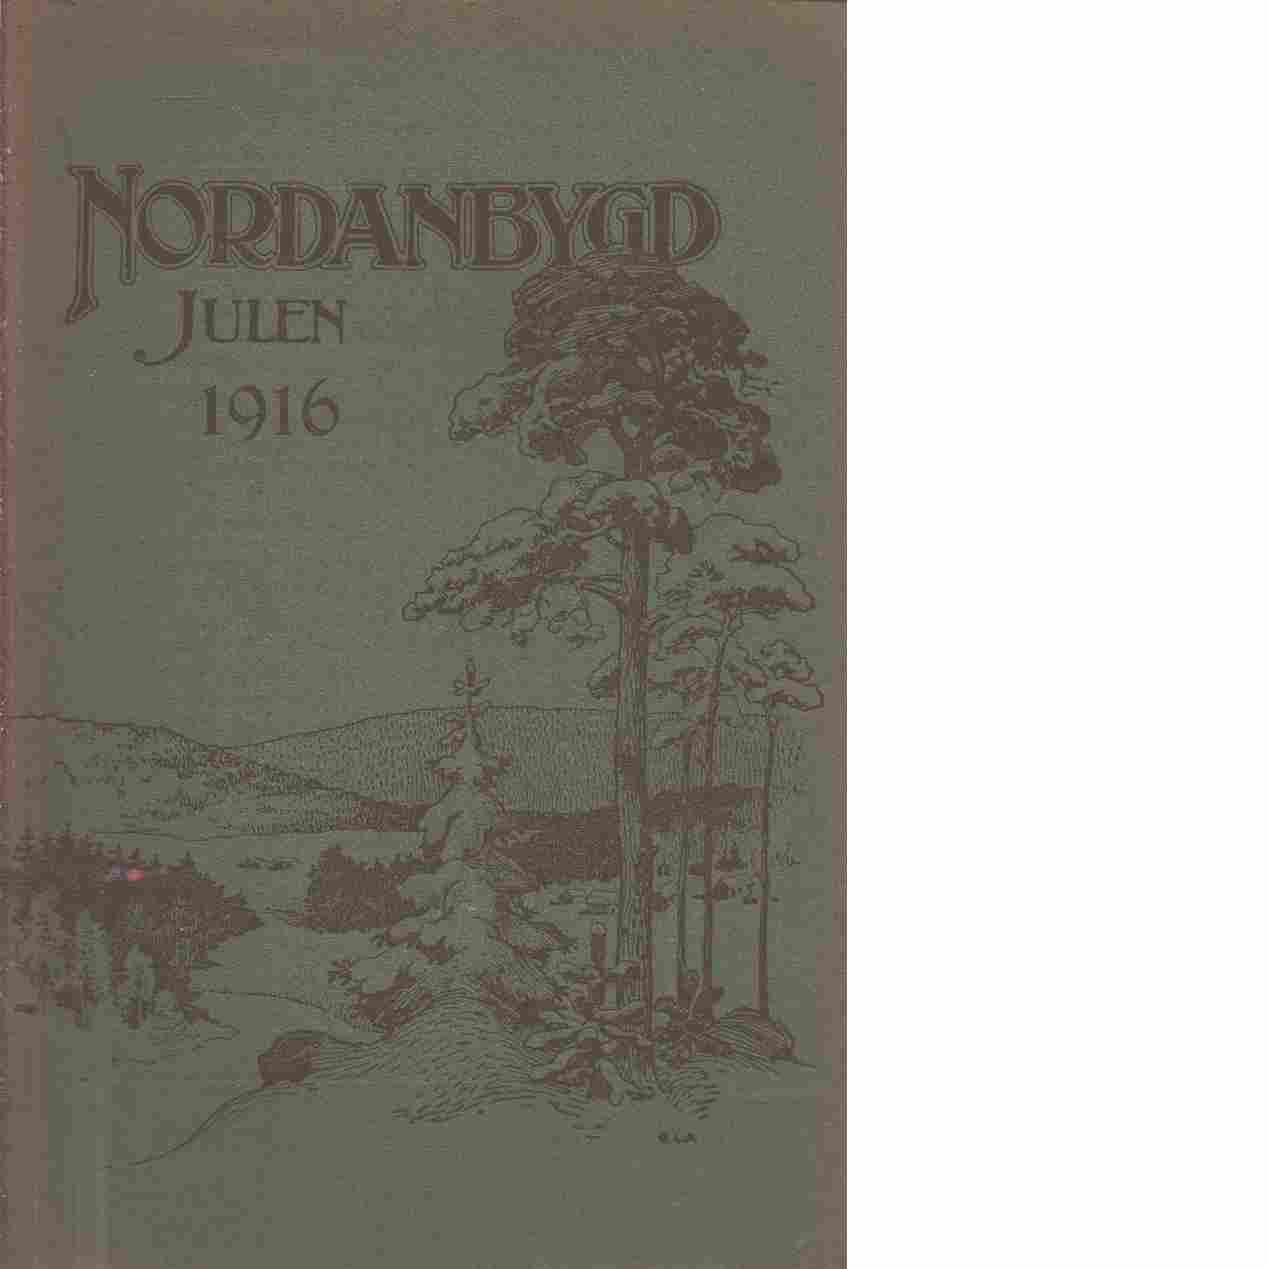 Nordanbygd : Julen 1916 utgifven af Folkhögskolans i Boden elevförbund - Red.